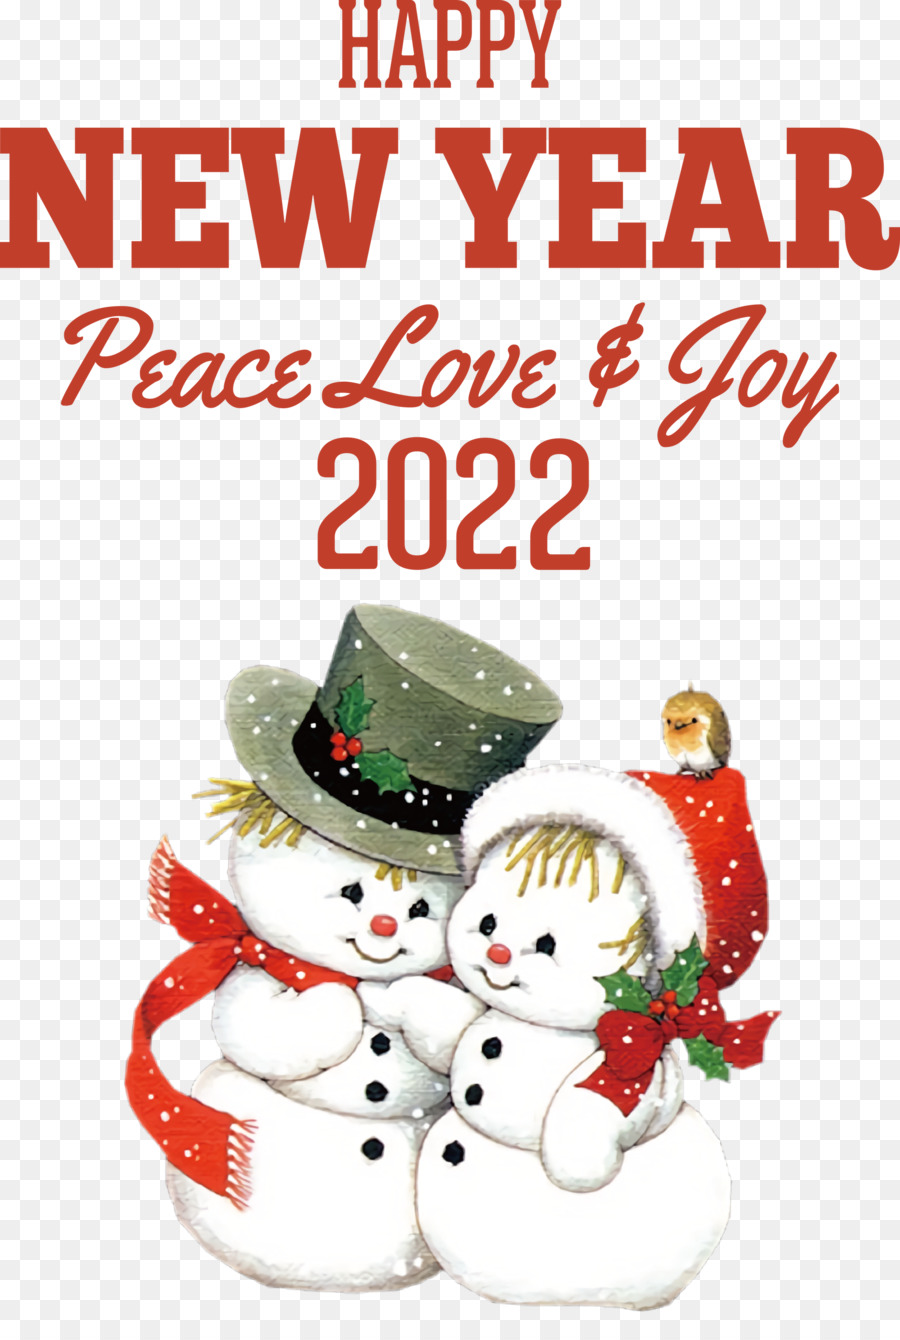 Capodanno 2022 felice anno nuovo 2022 - 